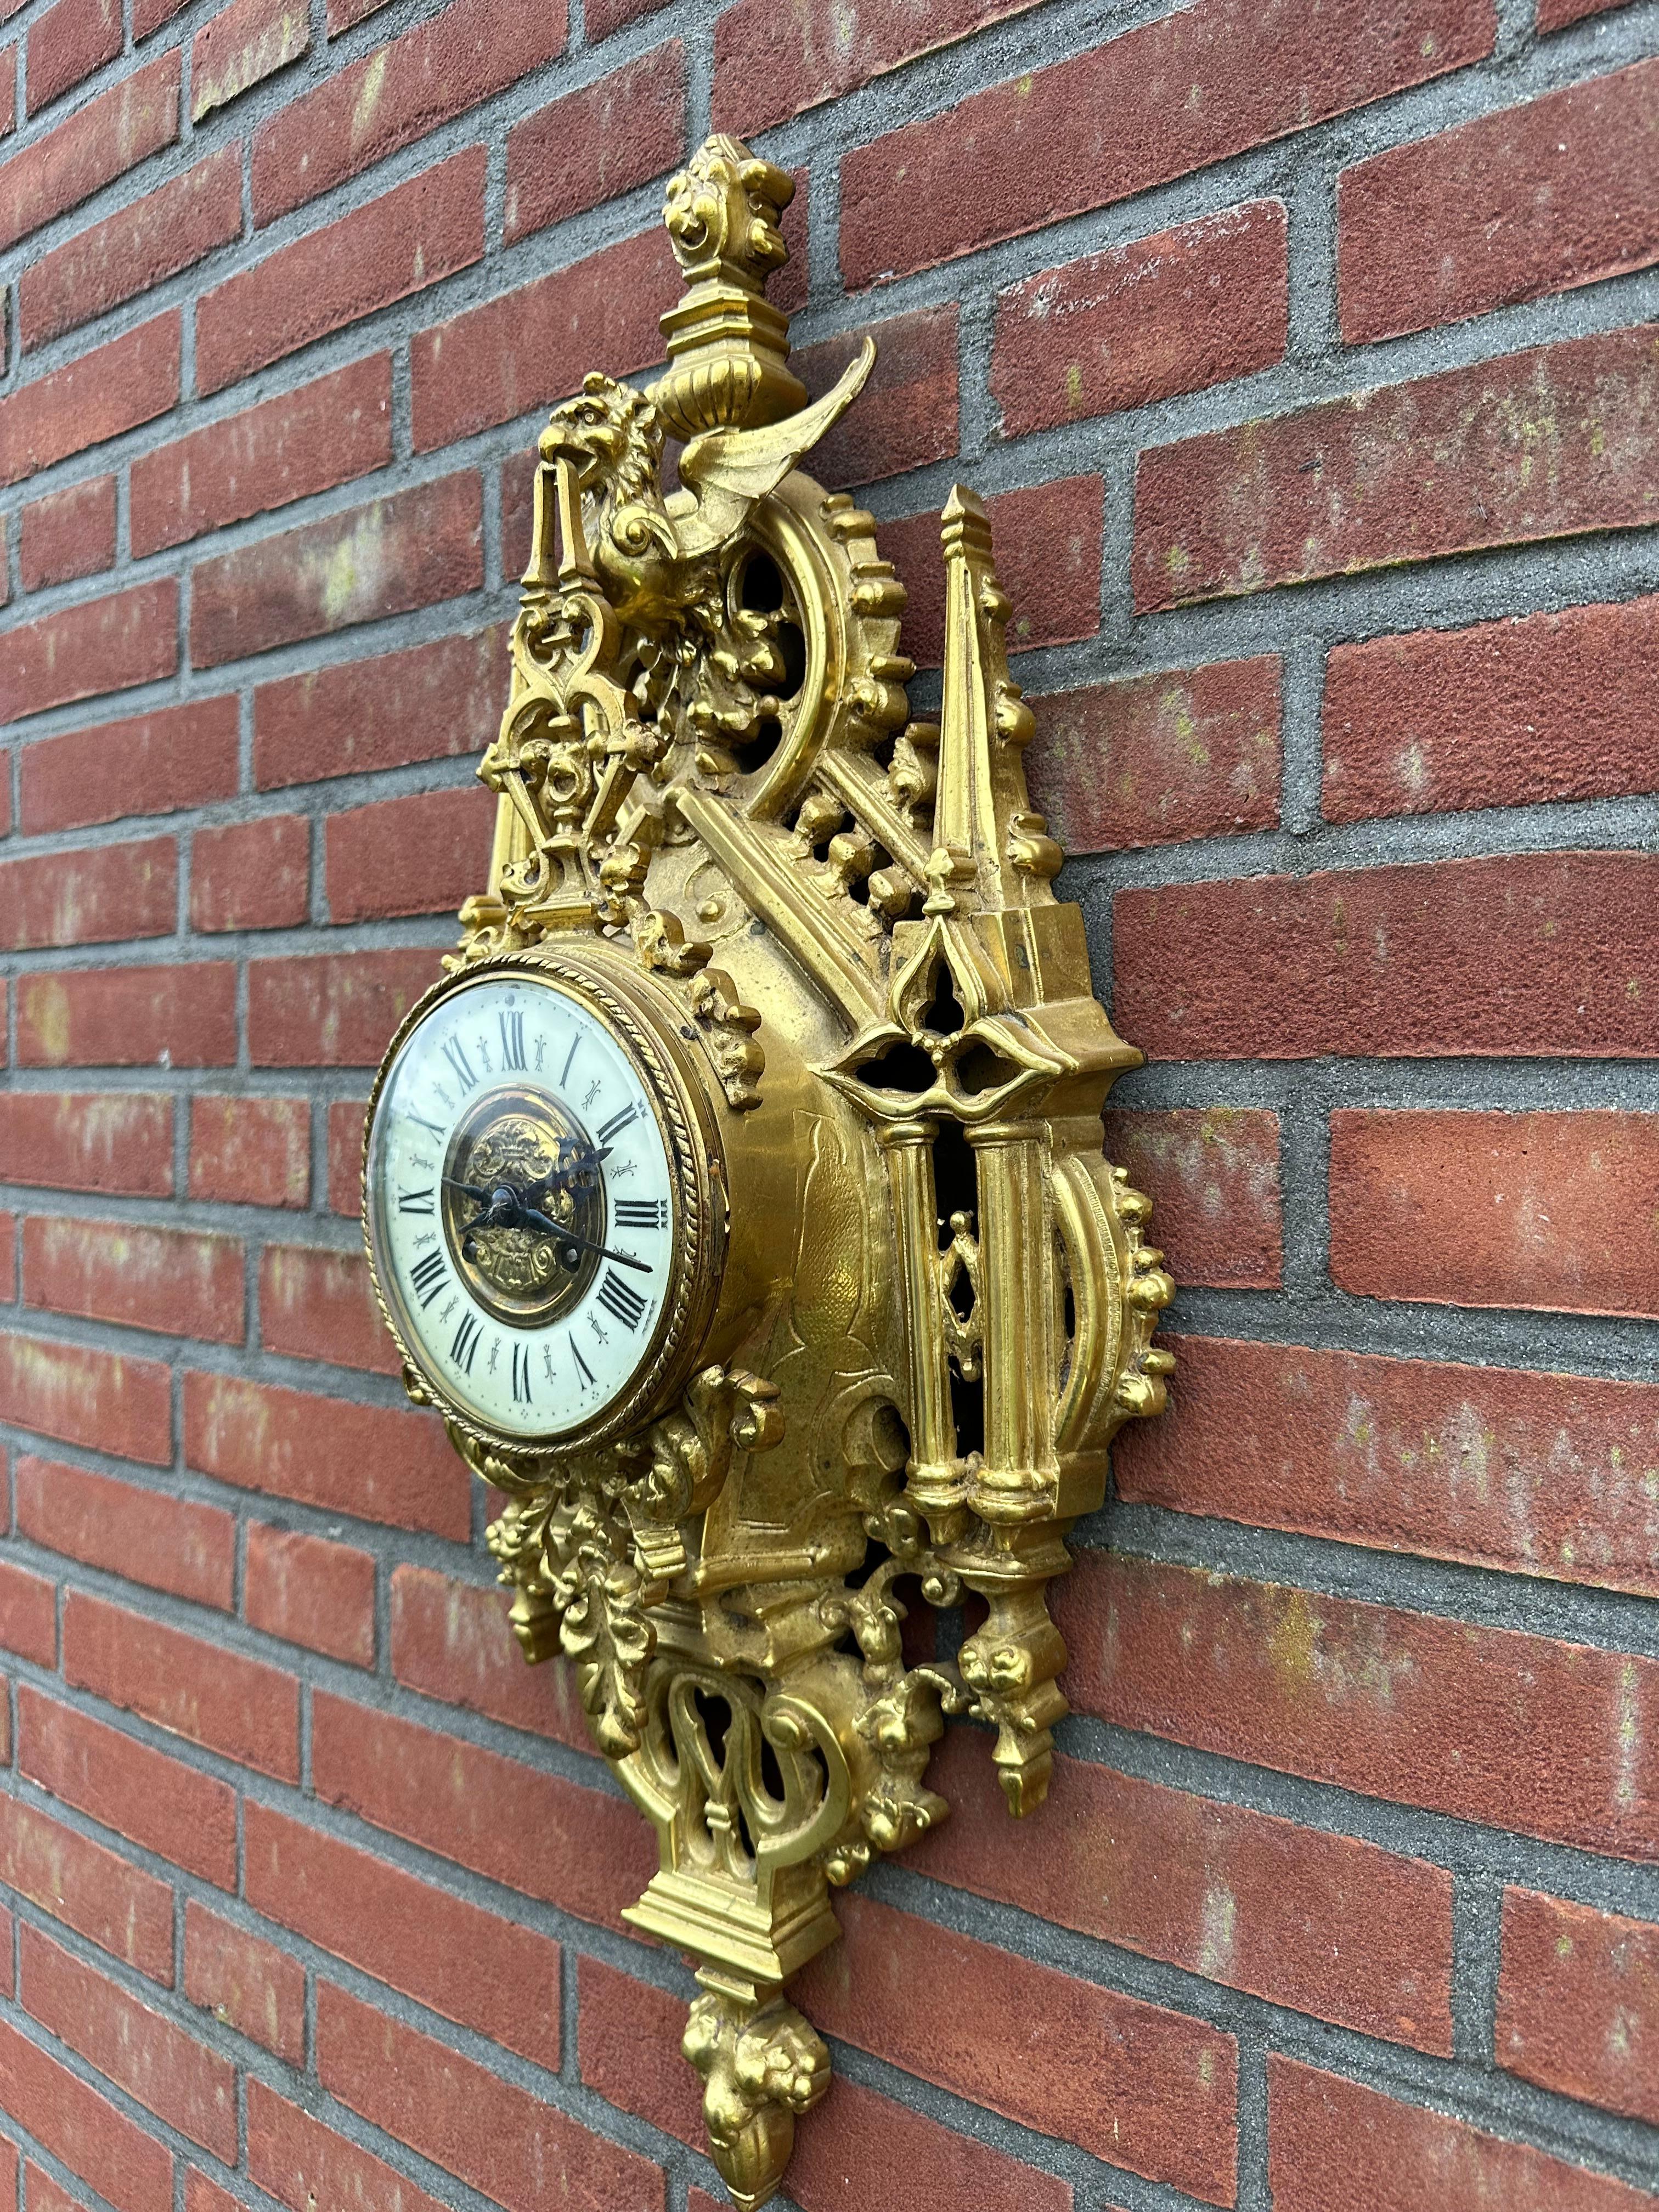 Superbe et parfaite horloge murale en bronze au design architectural gothique, datant d'environ 1880.

Si vous aimez les antiquités rares en général et les horloges uniques en particulier, ce spécimen fabriqué à la main et destiné à être fixé au mur